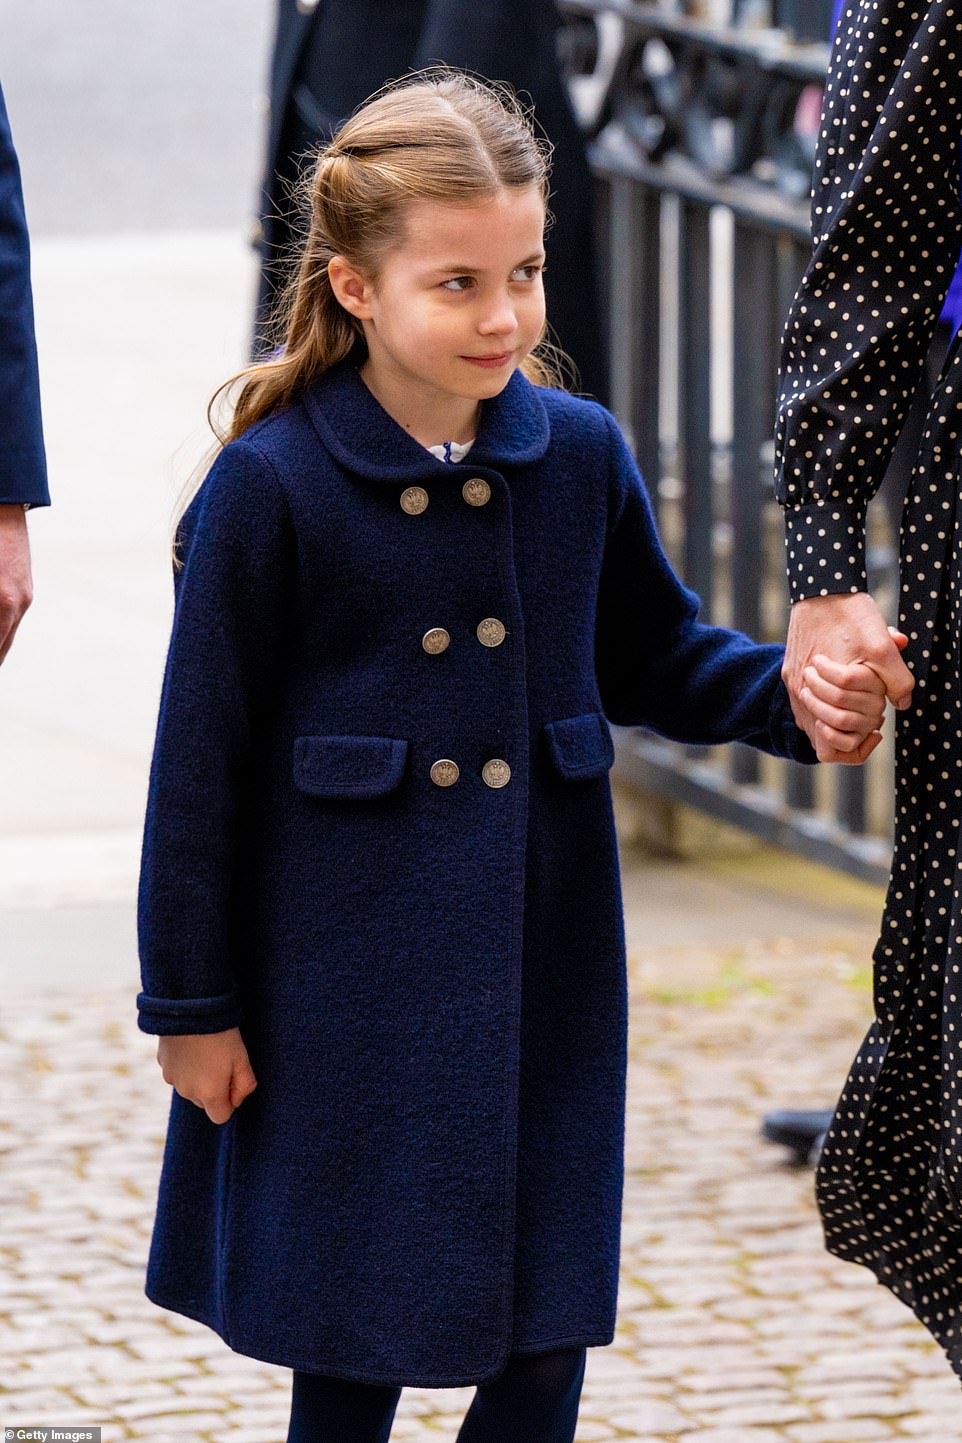 La princesa Charlotte asistirá a una escuela exclusiva de Berkshire en septiembre fuera de la escuela y le encanta cantar y bailar ballet.